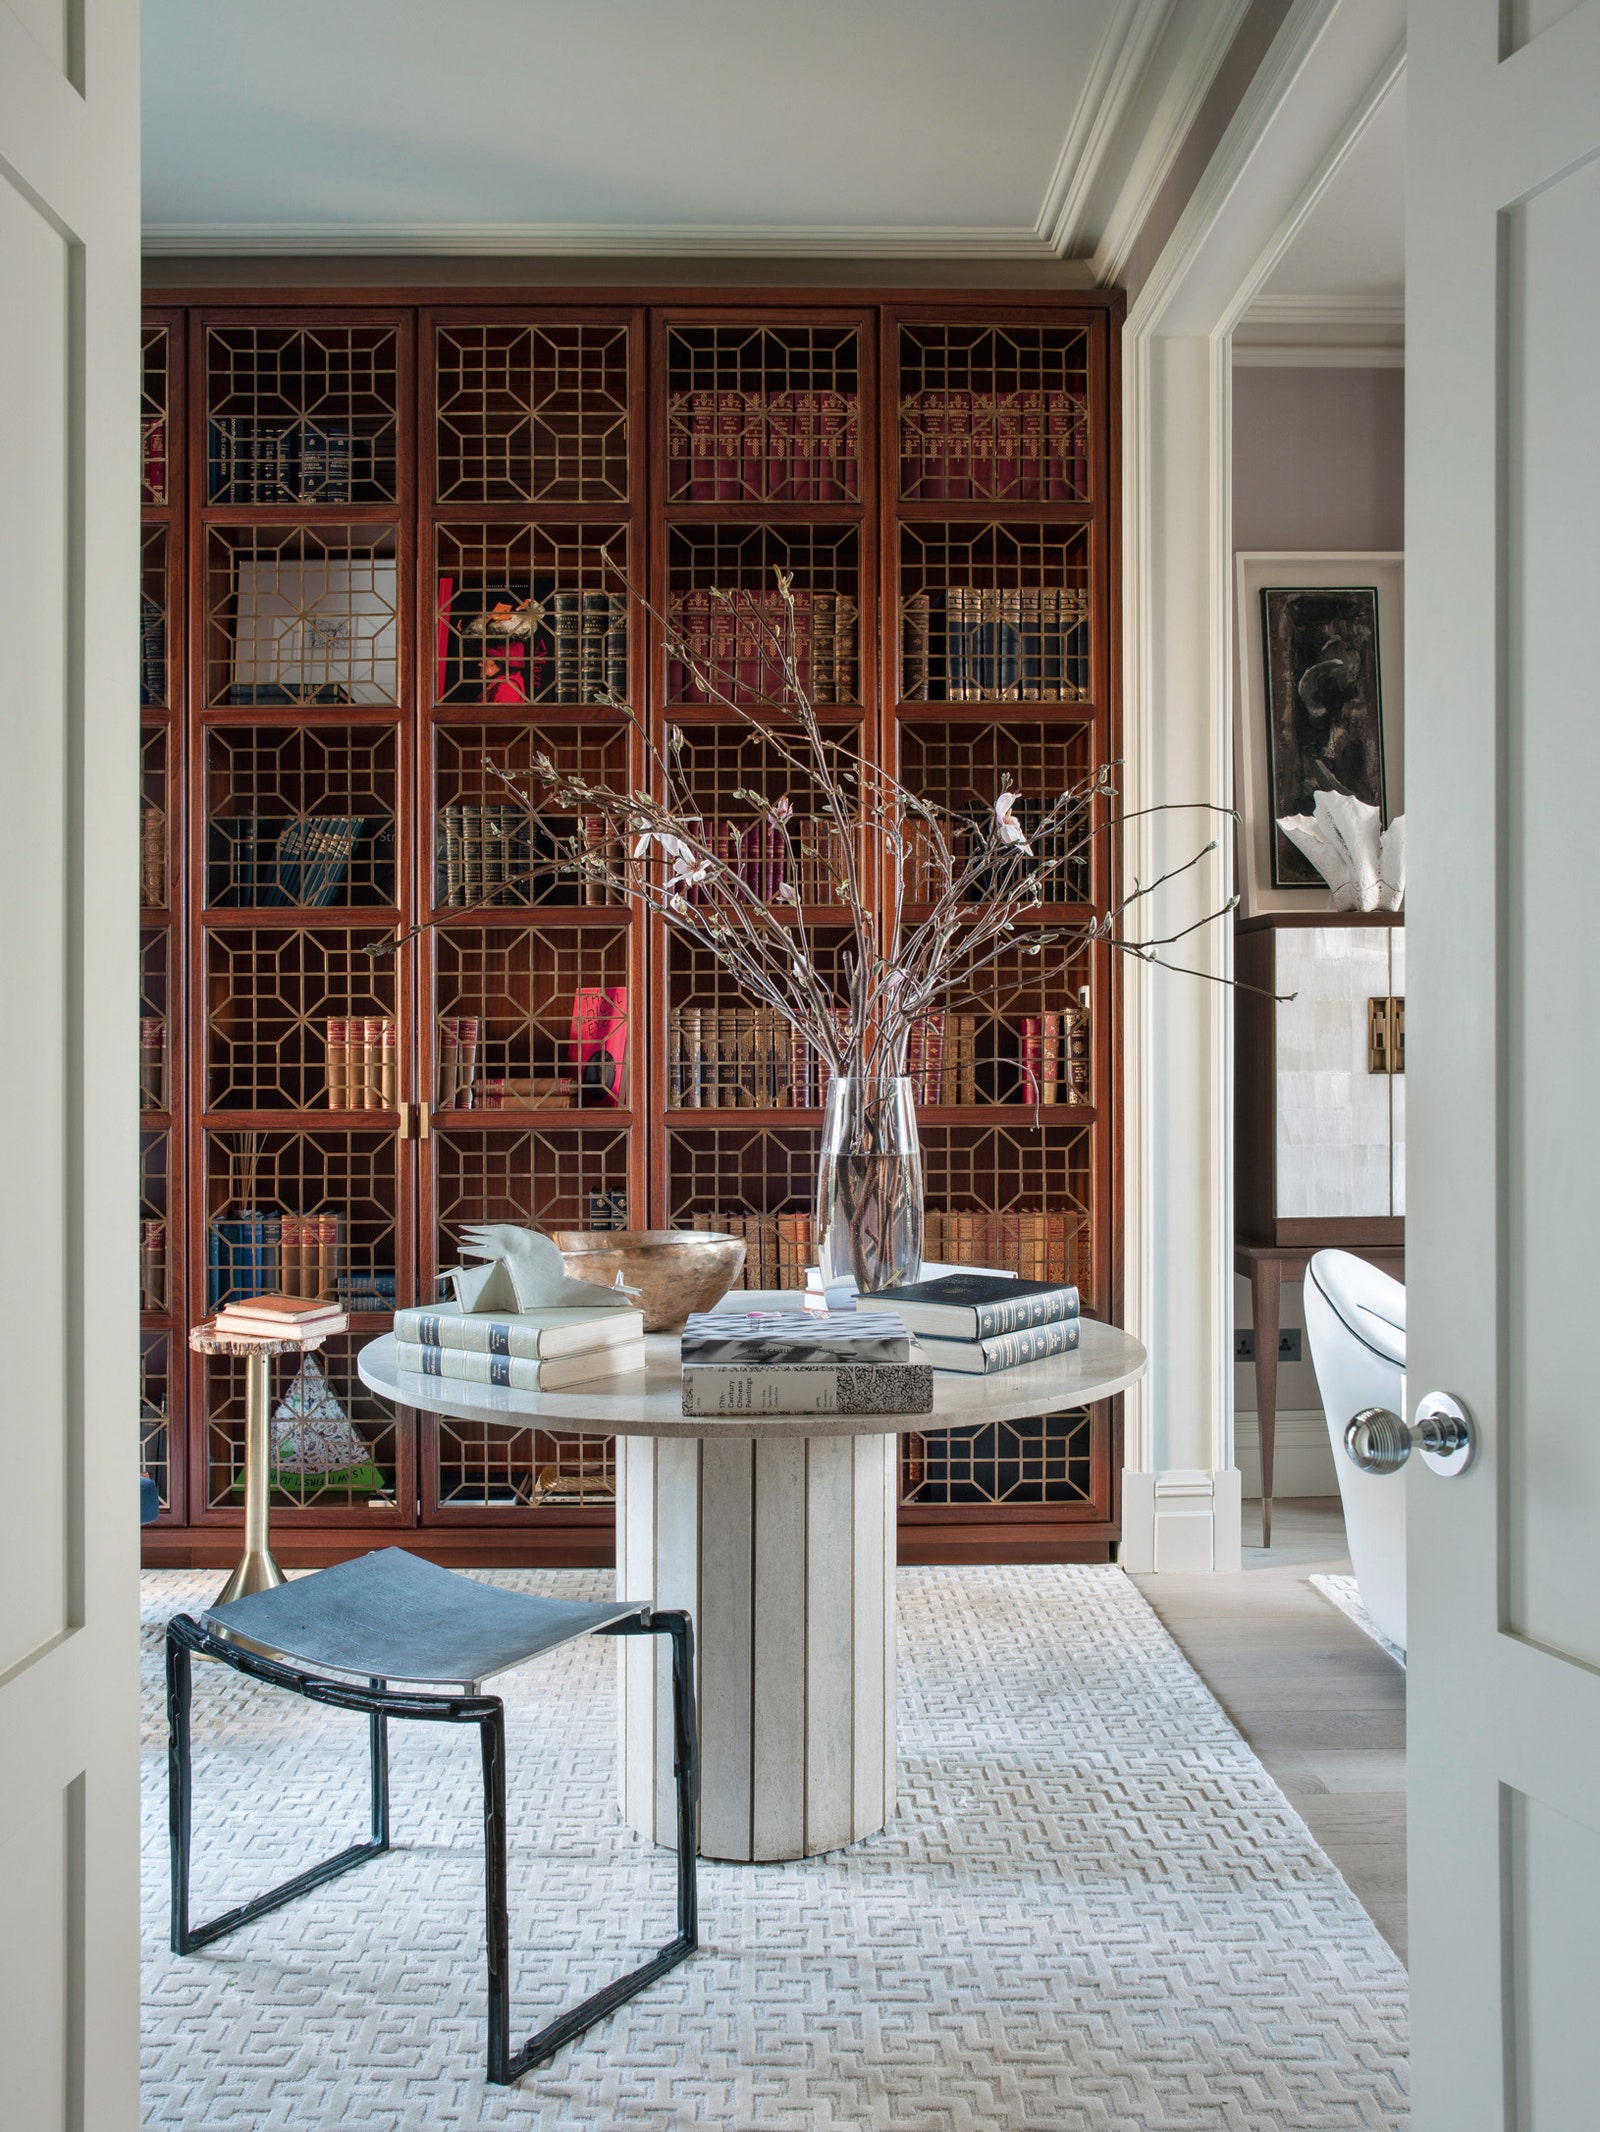 Дизайн интерьера дома по проекту Ираклия Зарии в Лондоне — Интерьер с обложки